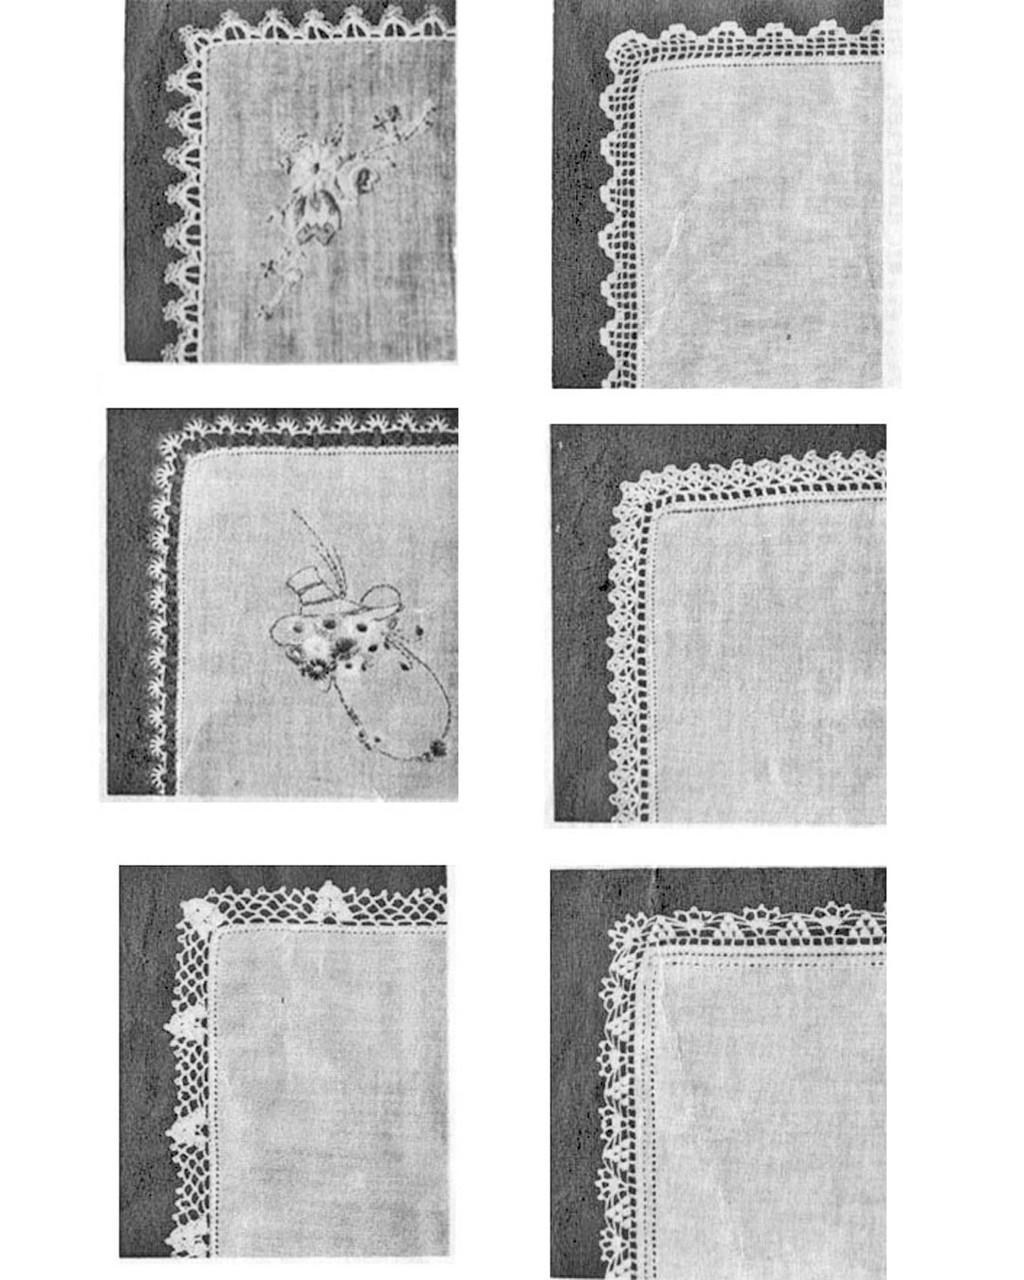 Seven Crochet Edgings, Anne Cabot 5090